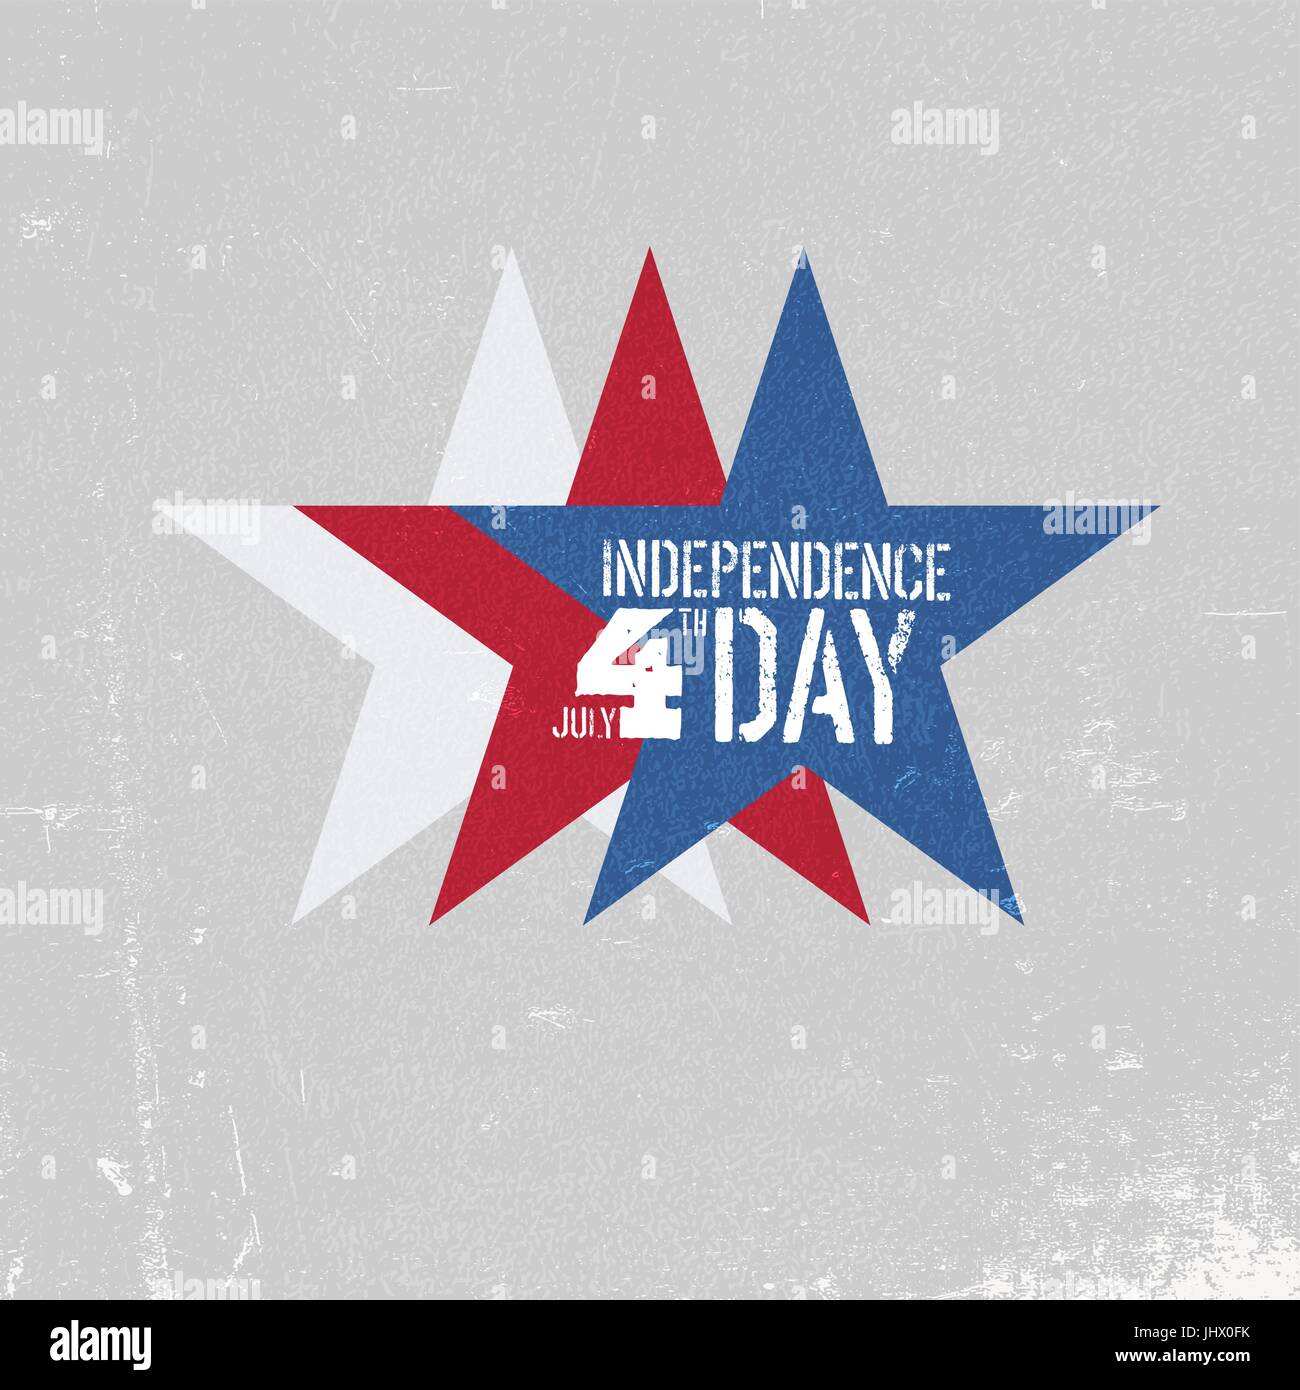 Independence Day-Grußkarte. Patriotische Entwurfsvorlage. Drei Sterne in rot, weiß, blau gefärbt. Grunge Texturen in Schichten und kann bearbeitet werden. Stock Vektor